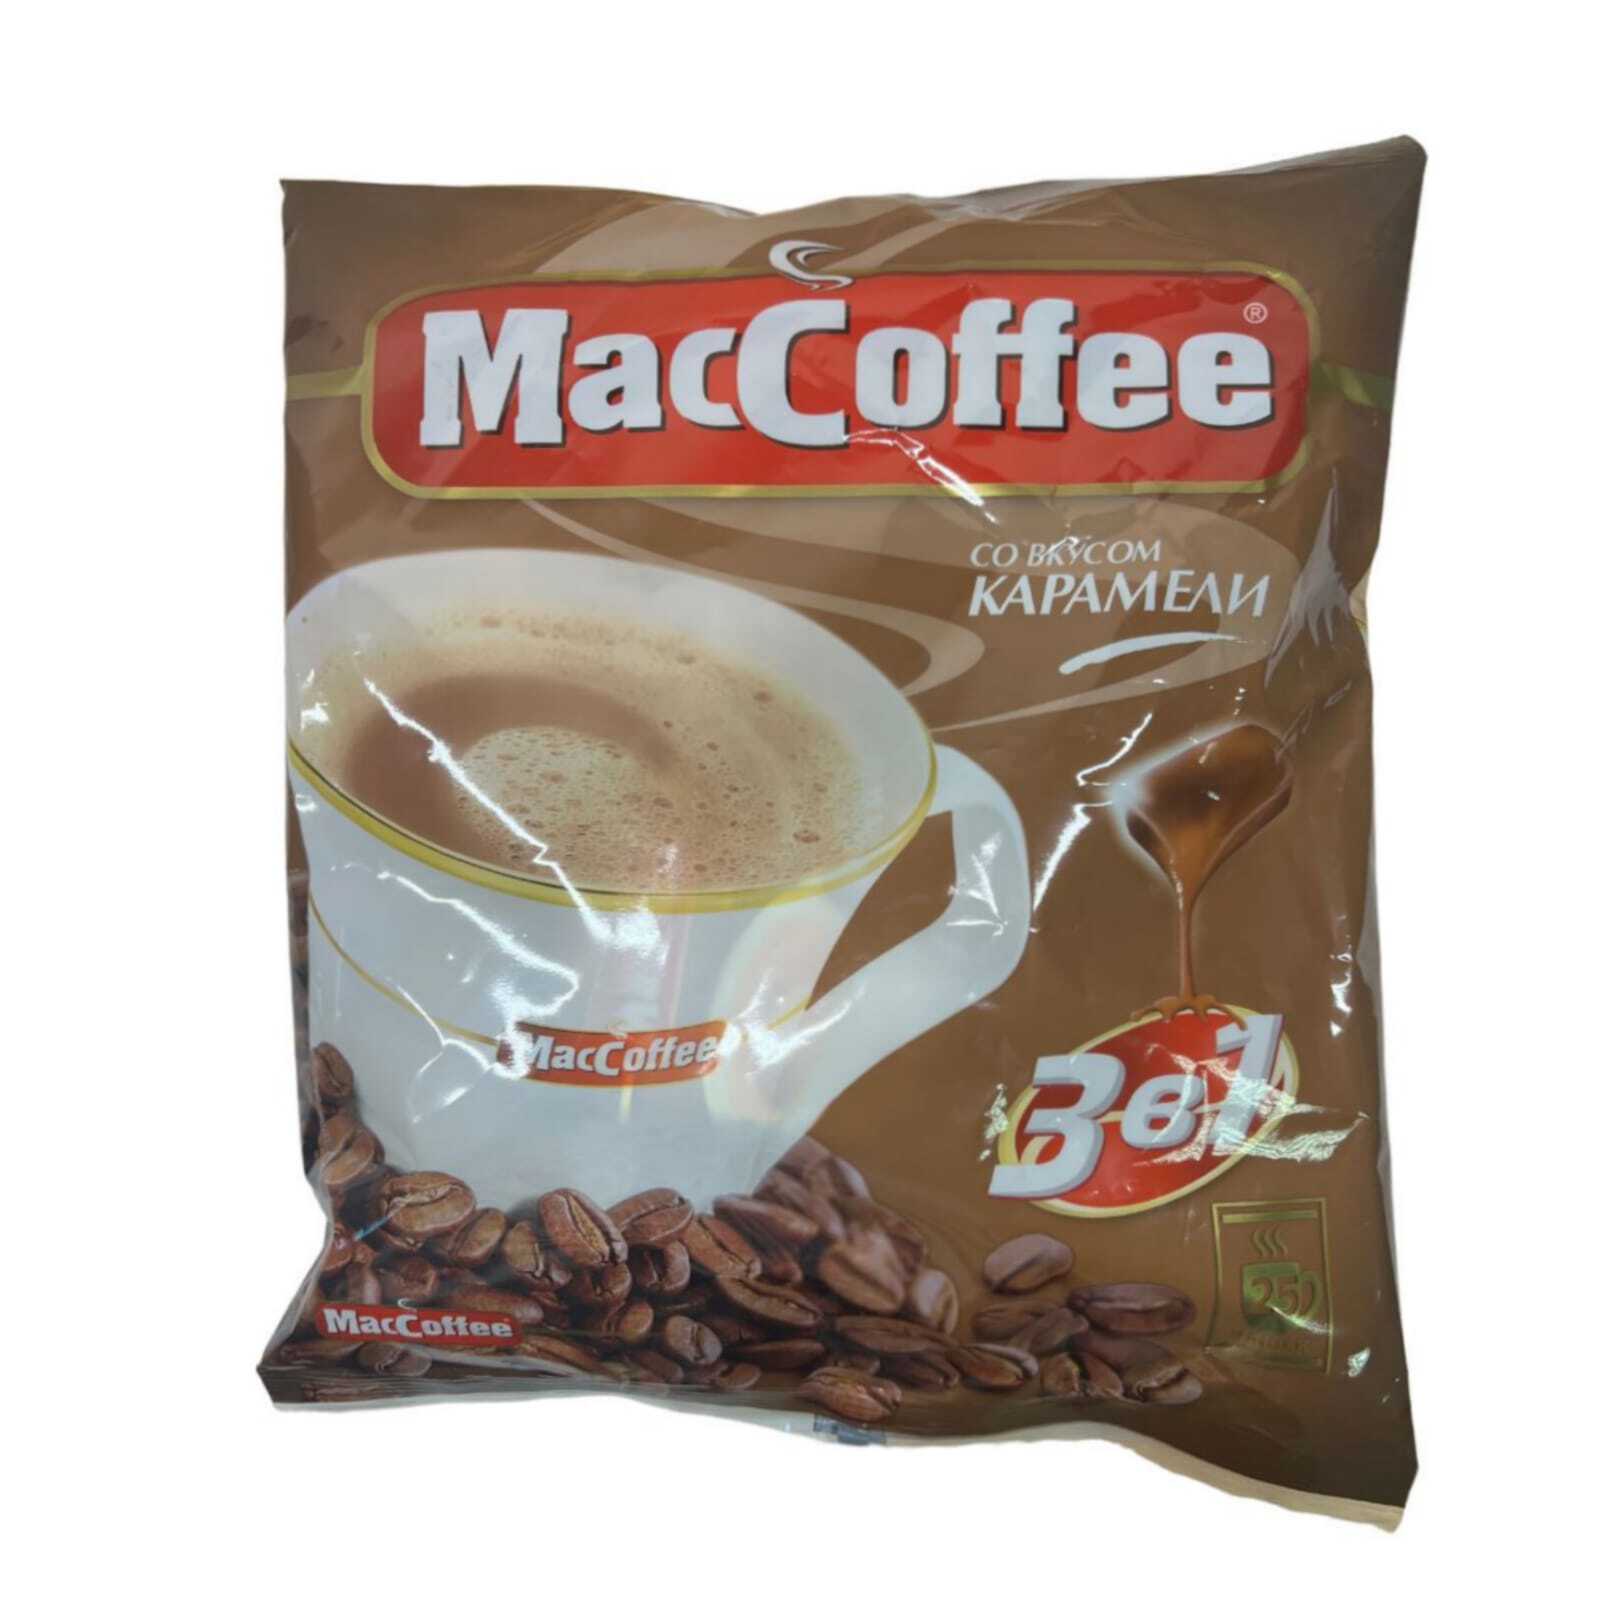 Маккофе 3 в 1. Кофе растворимый Маккофе. MACCOFFEE карамель (3в1) кофейный напиток 18г*25*20. Кофе 3 в 1 Маккофе. Маккофе отзывы